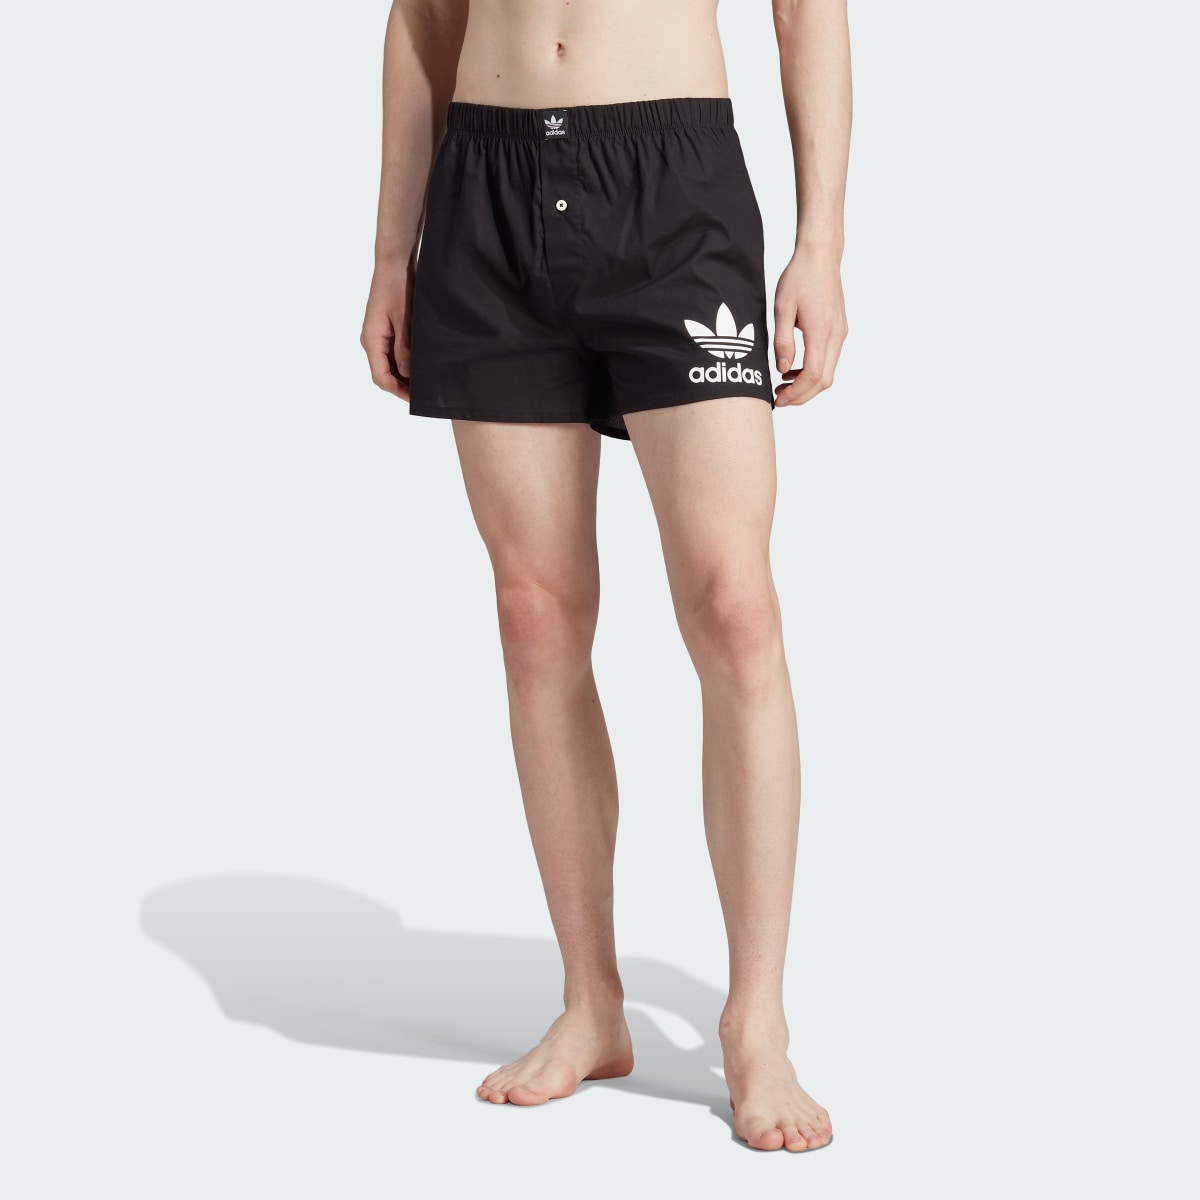 Adidas Boxers de Algodão Comfort Core – 2 pares. 4